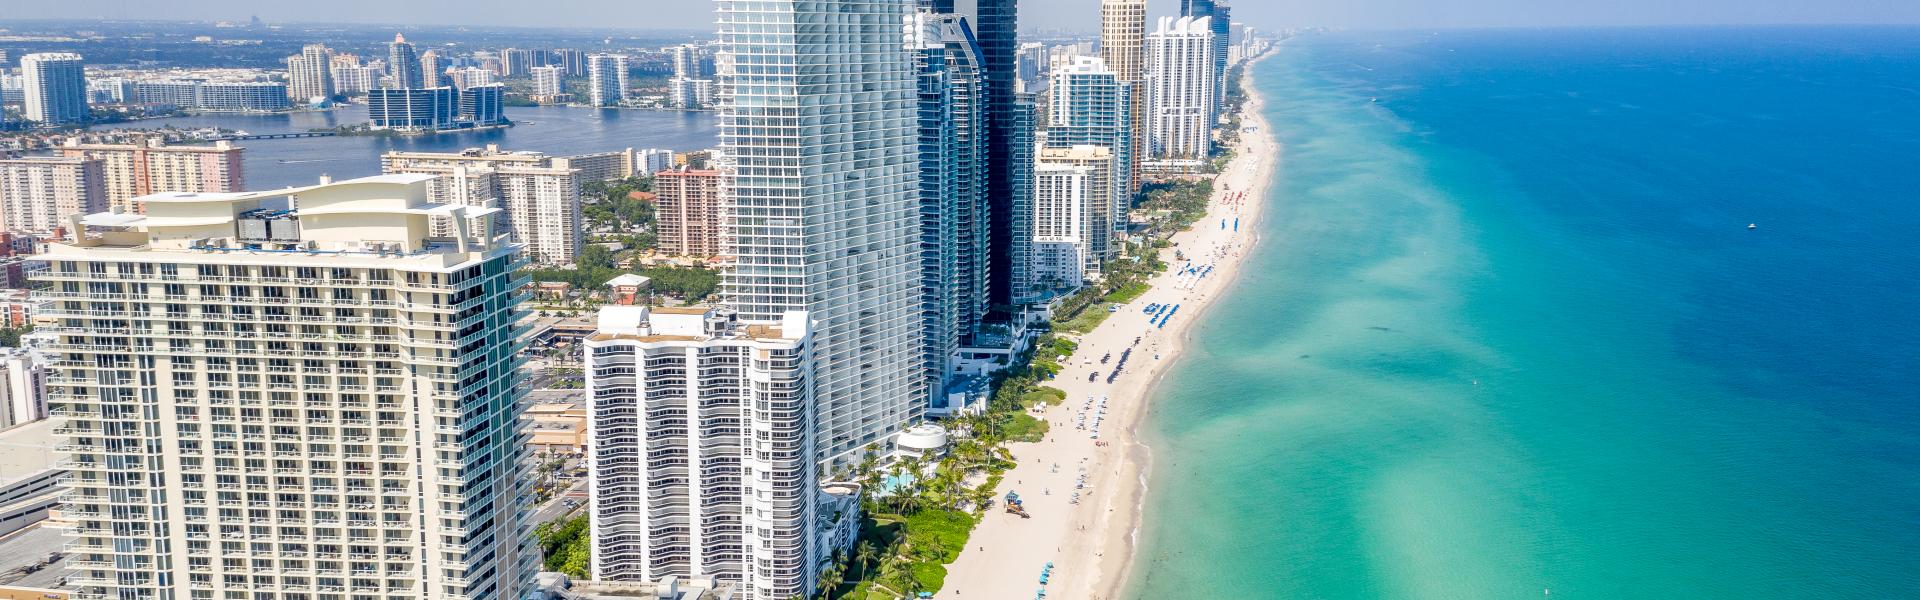 Casa vacanze a Miami: sole, mare e tanta movida! - Casamundo